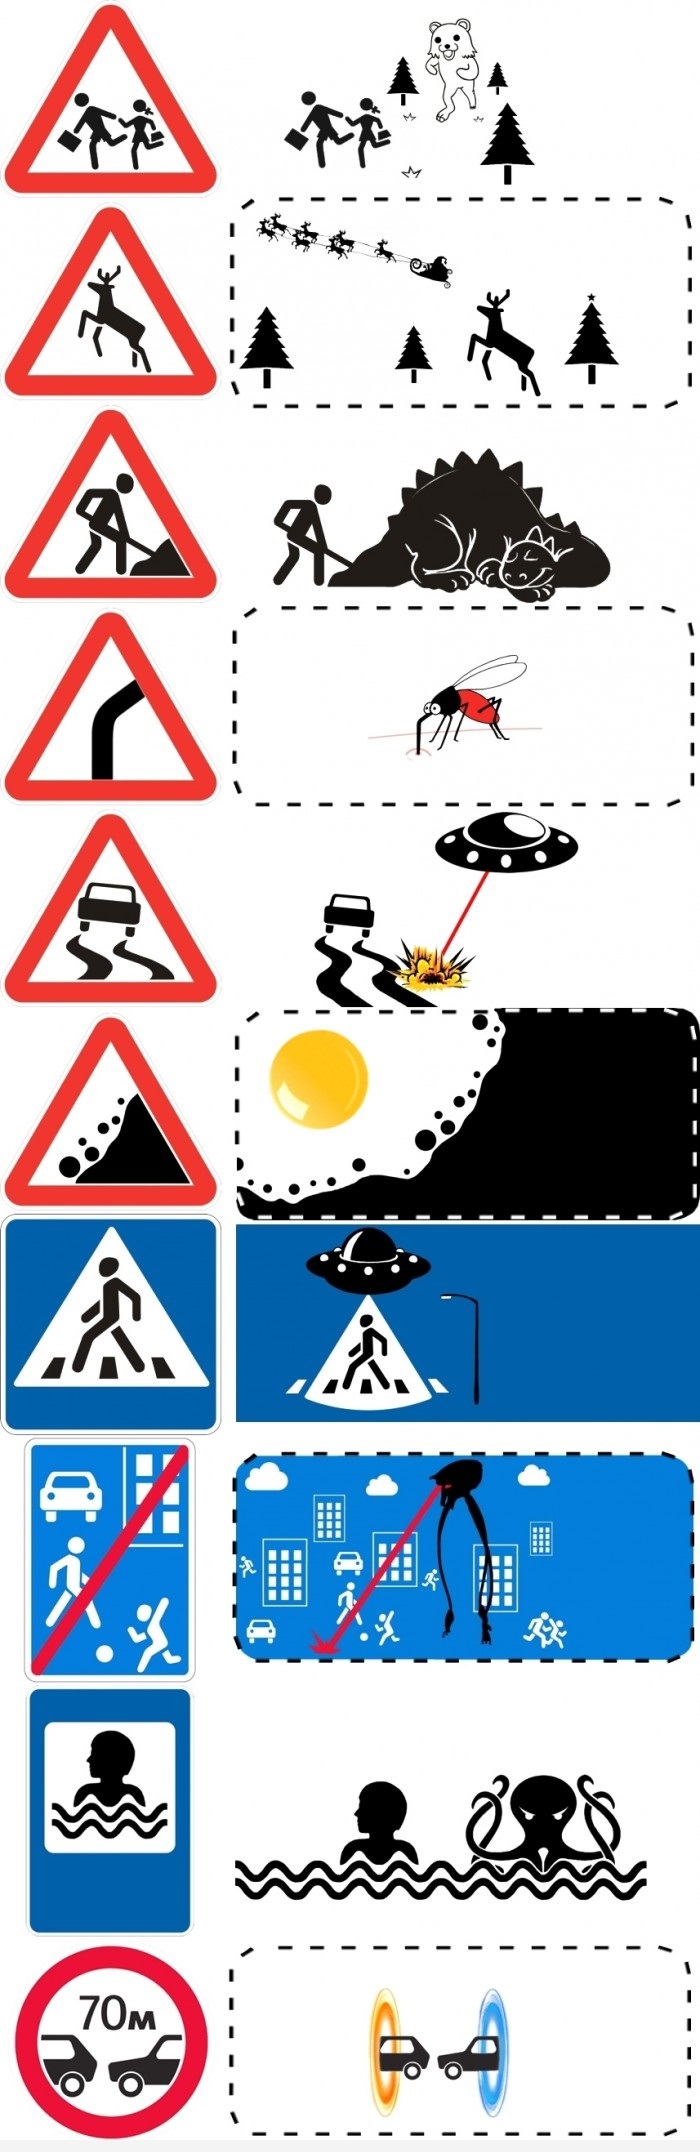 warning-signs